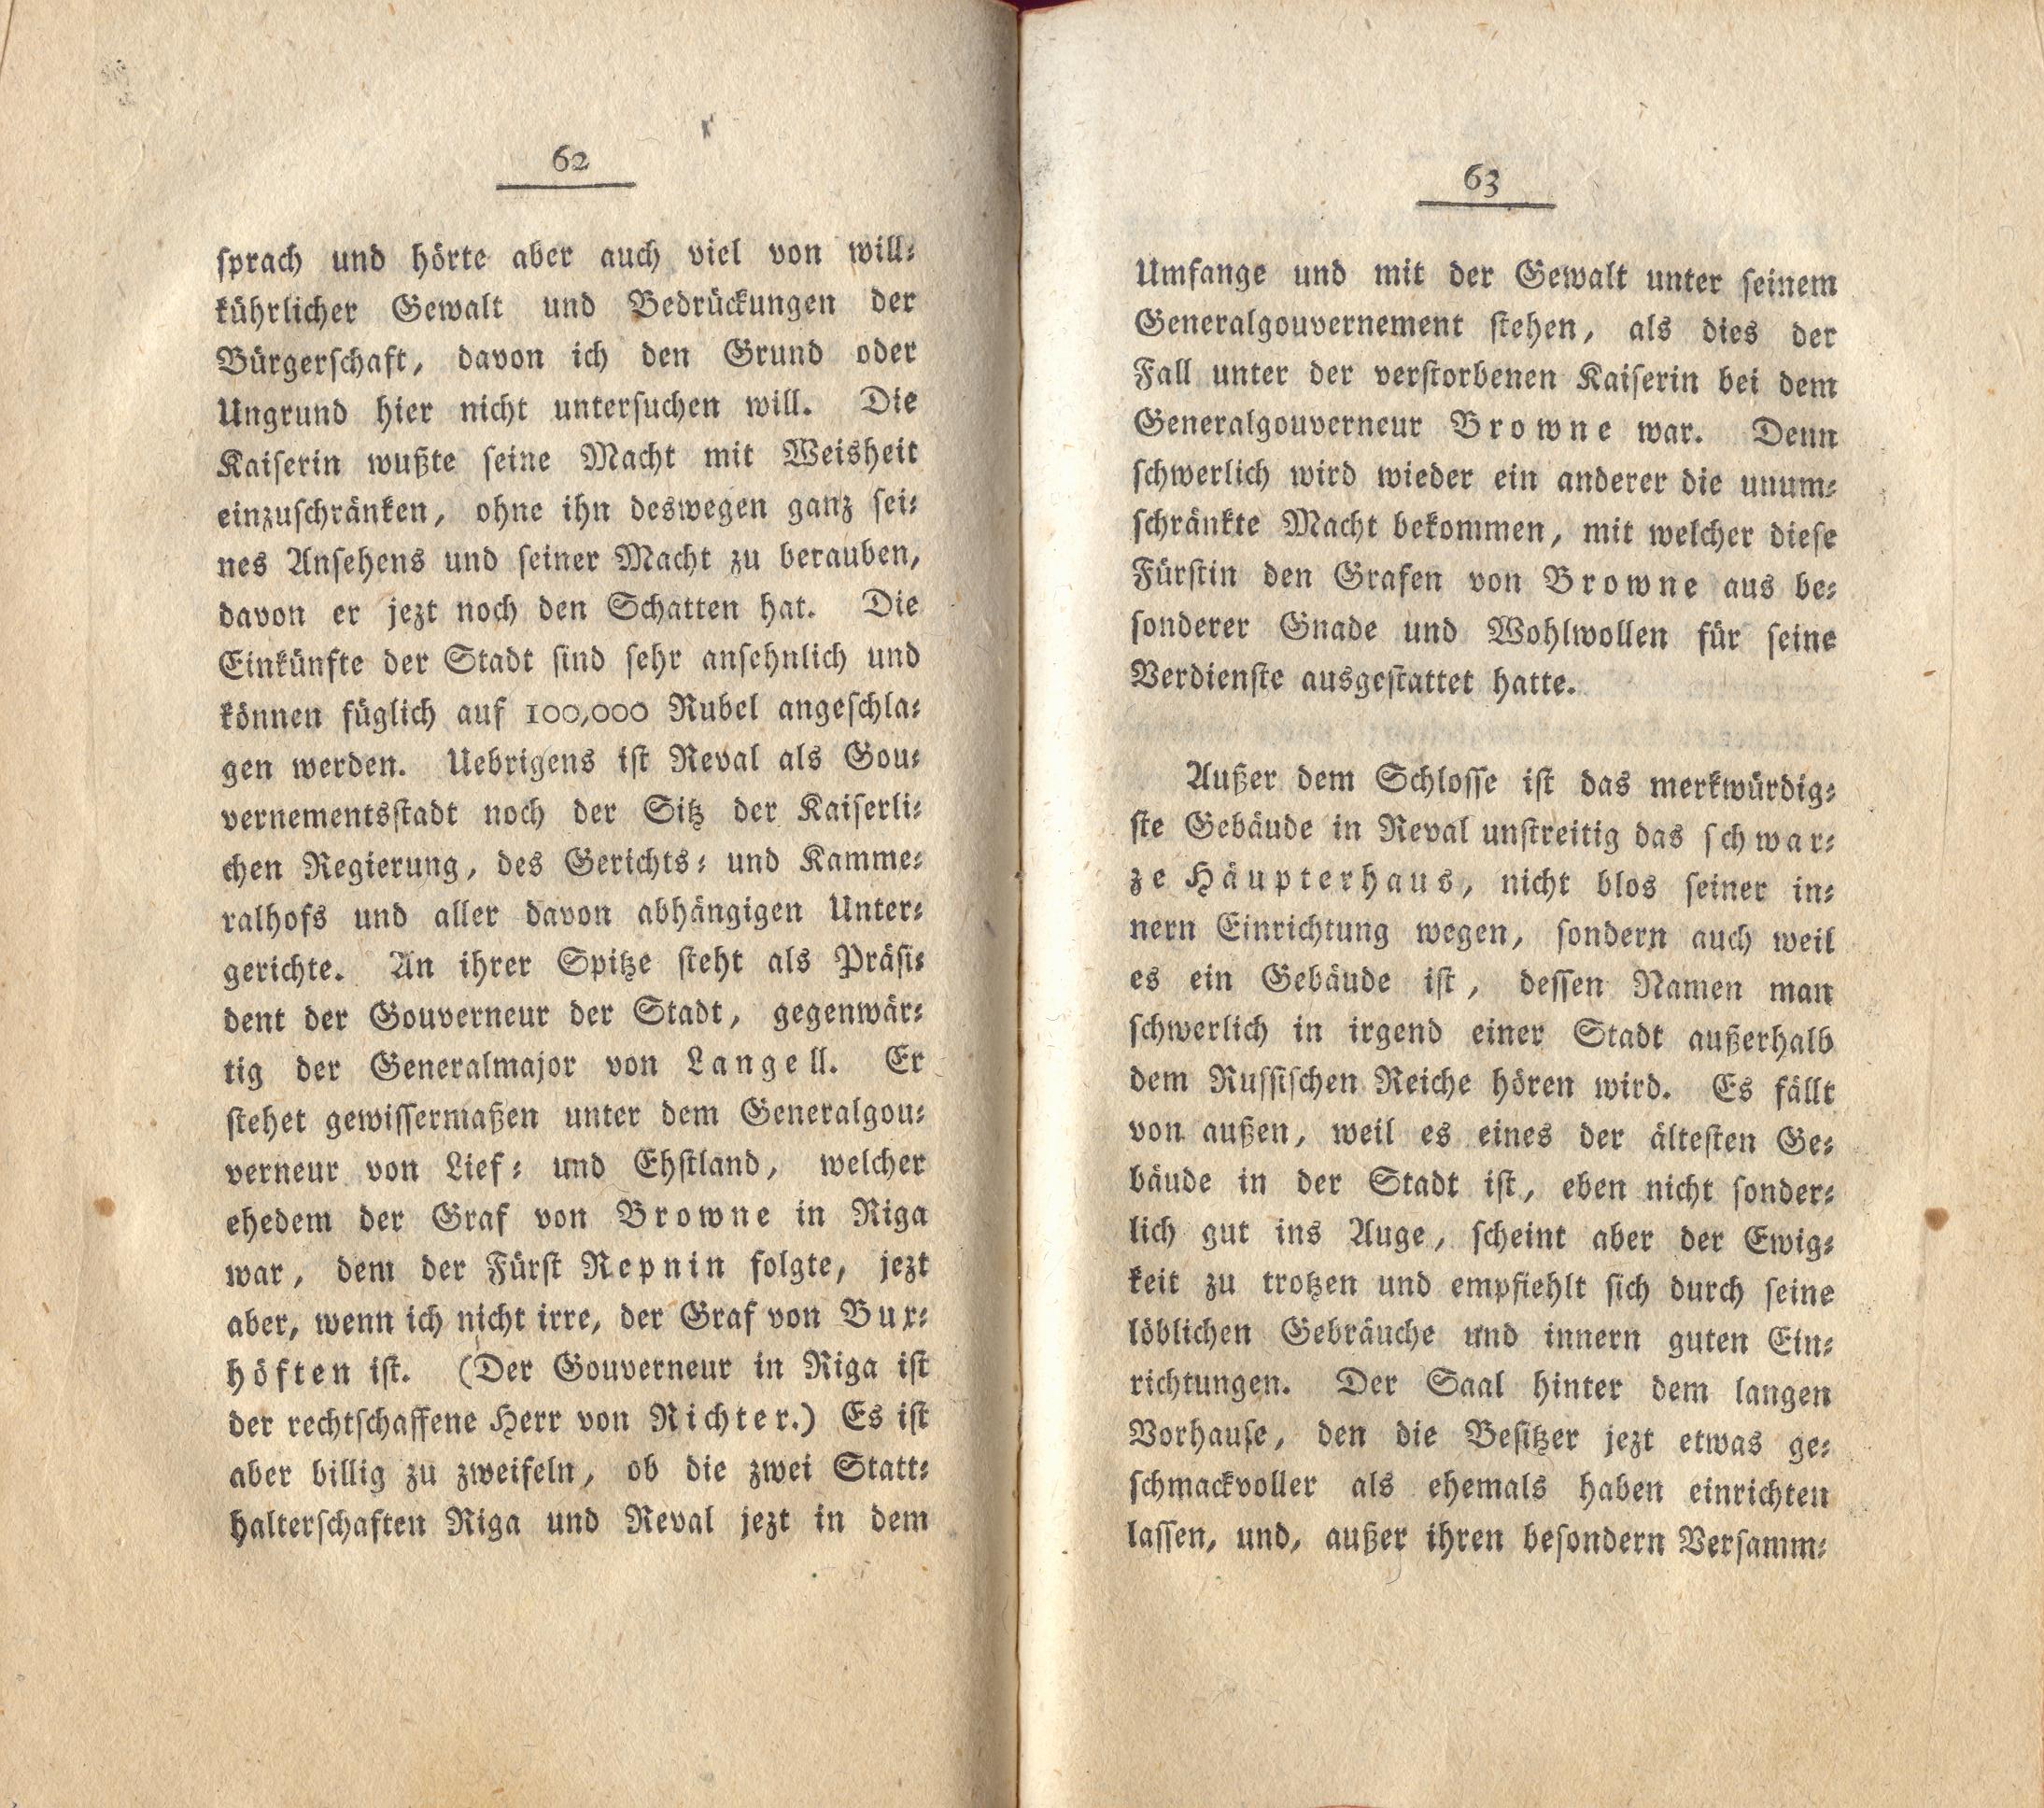 Neue Pittoresken aus Norden (1805) | 36. (62-63) Main body of text